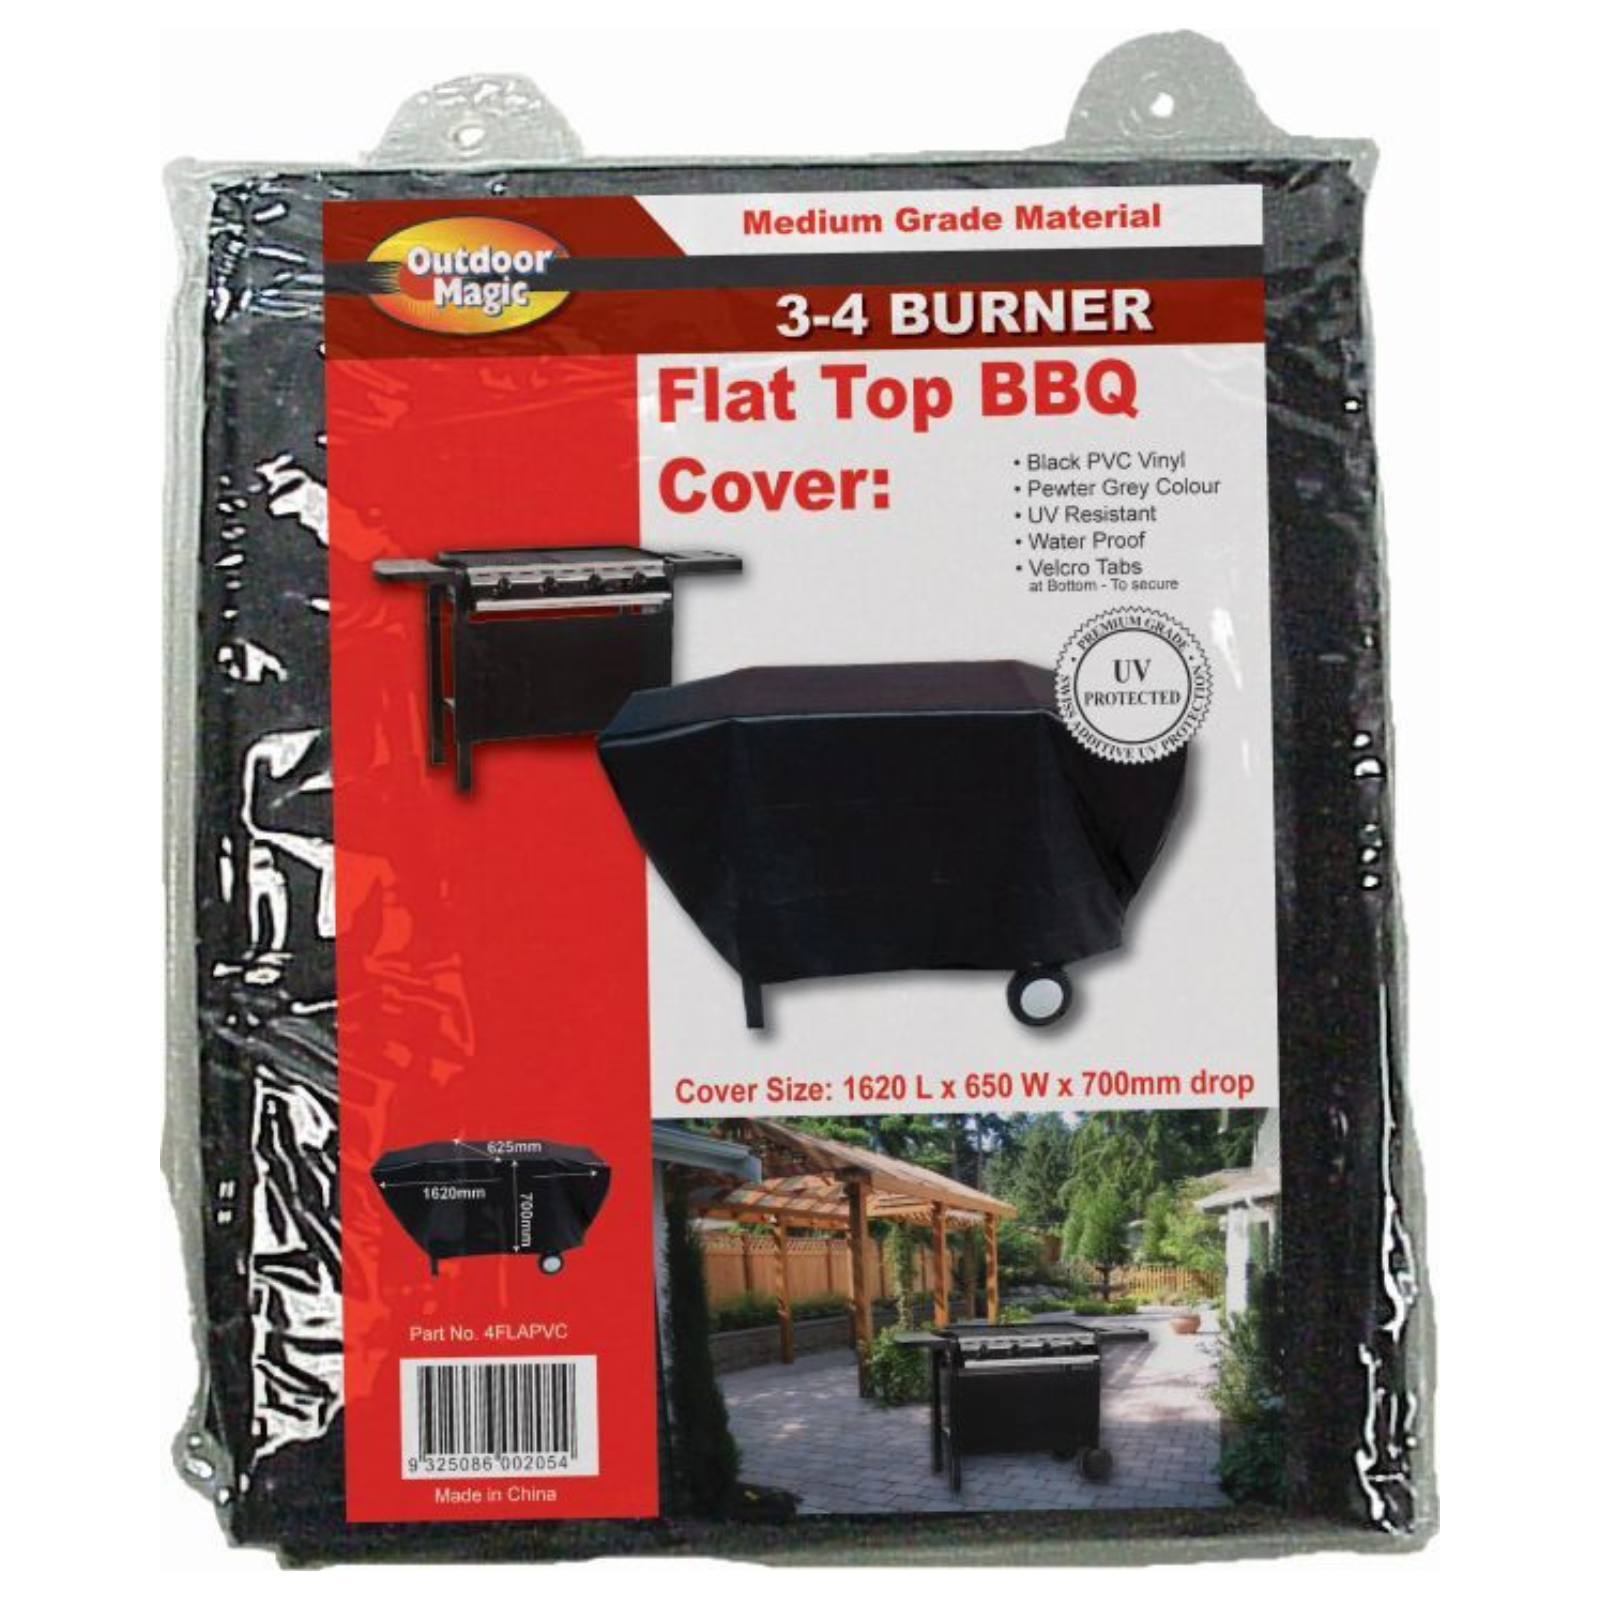 Outdoor Magic - Flat Top BBQ Cover 3-4 Burner - 4FLAPVC